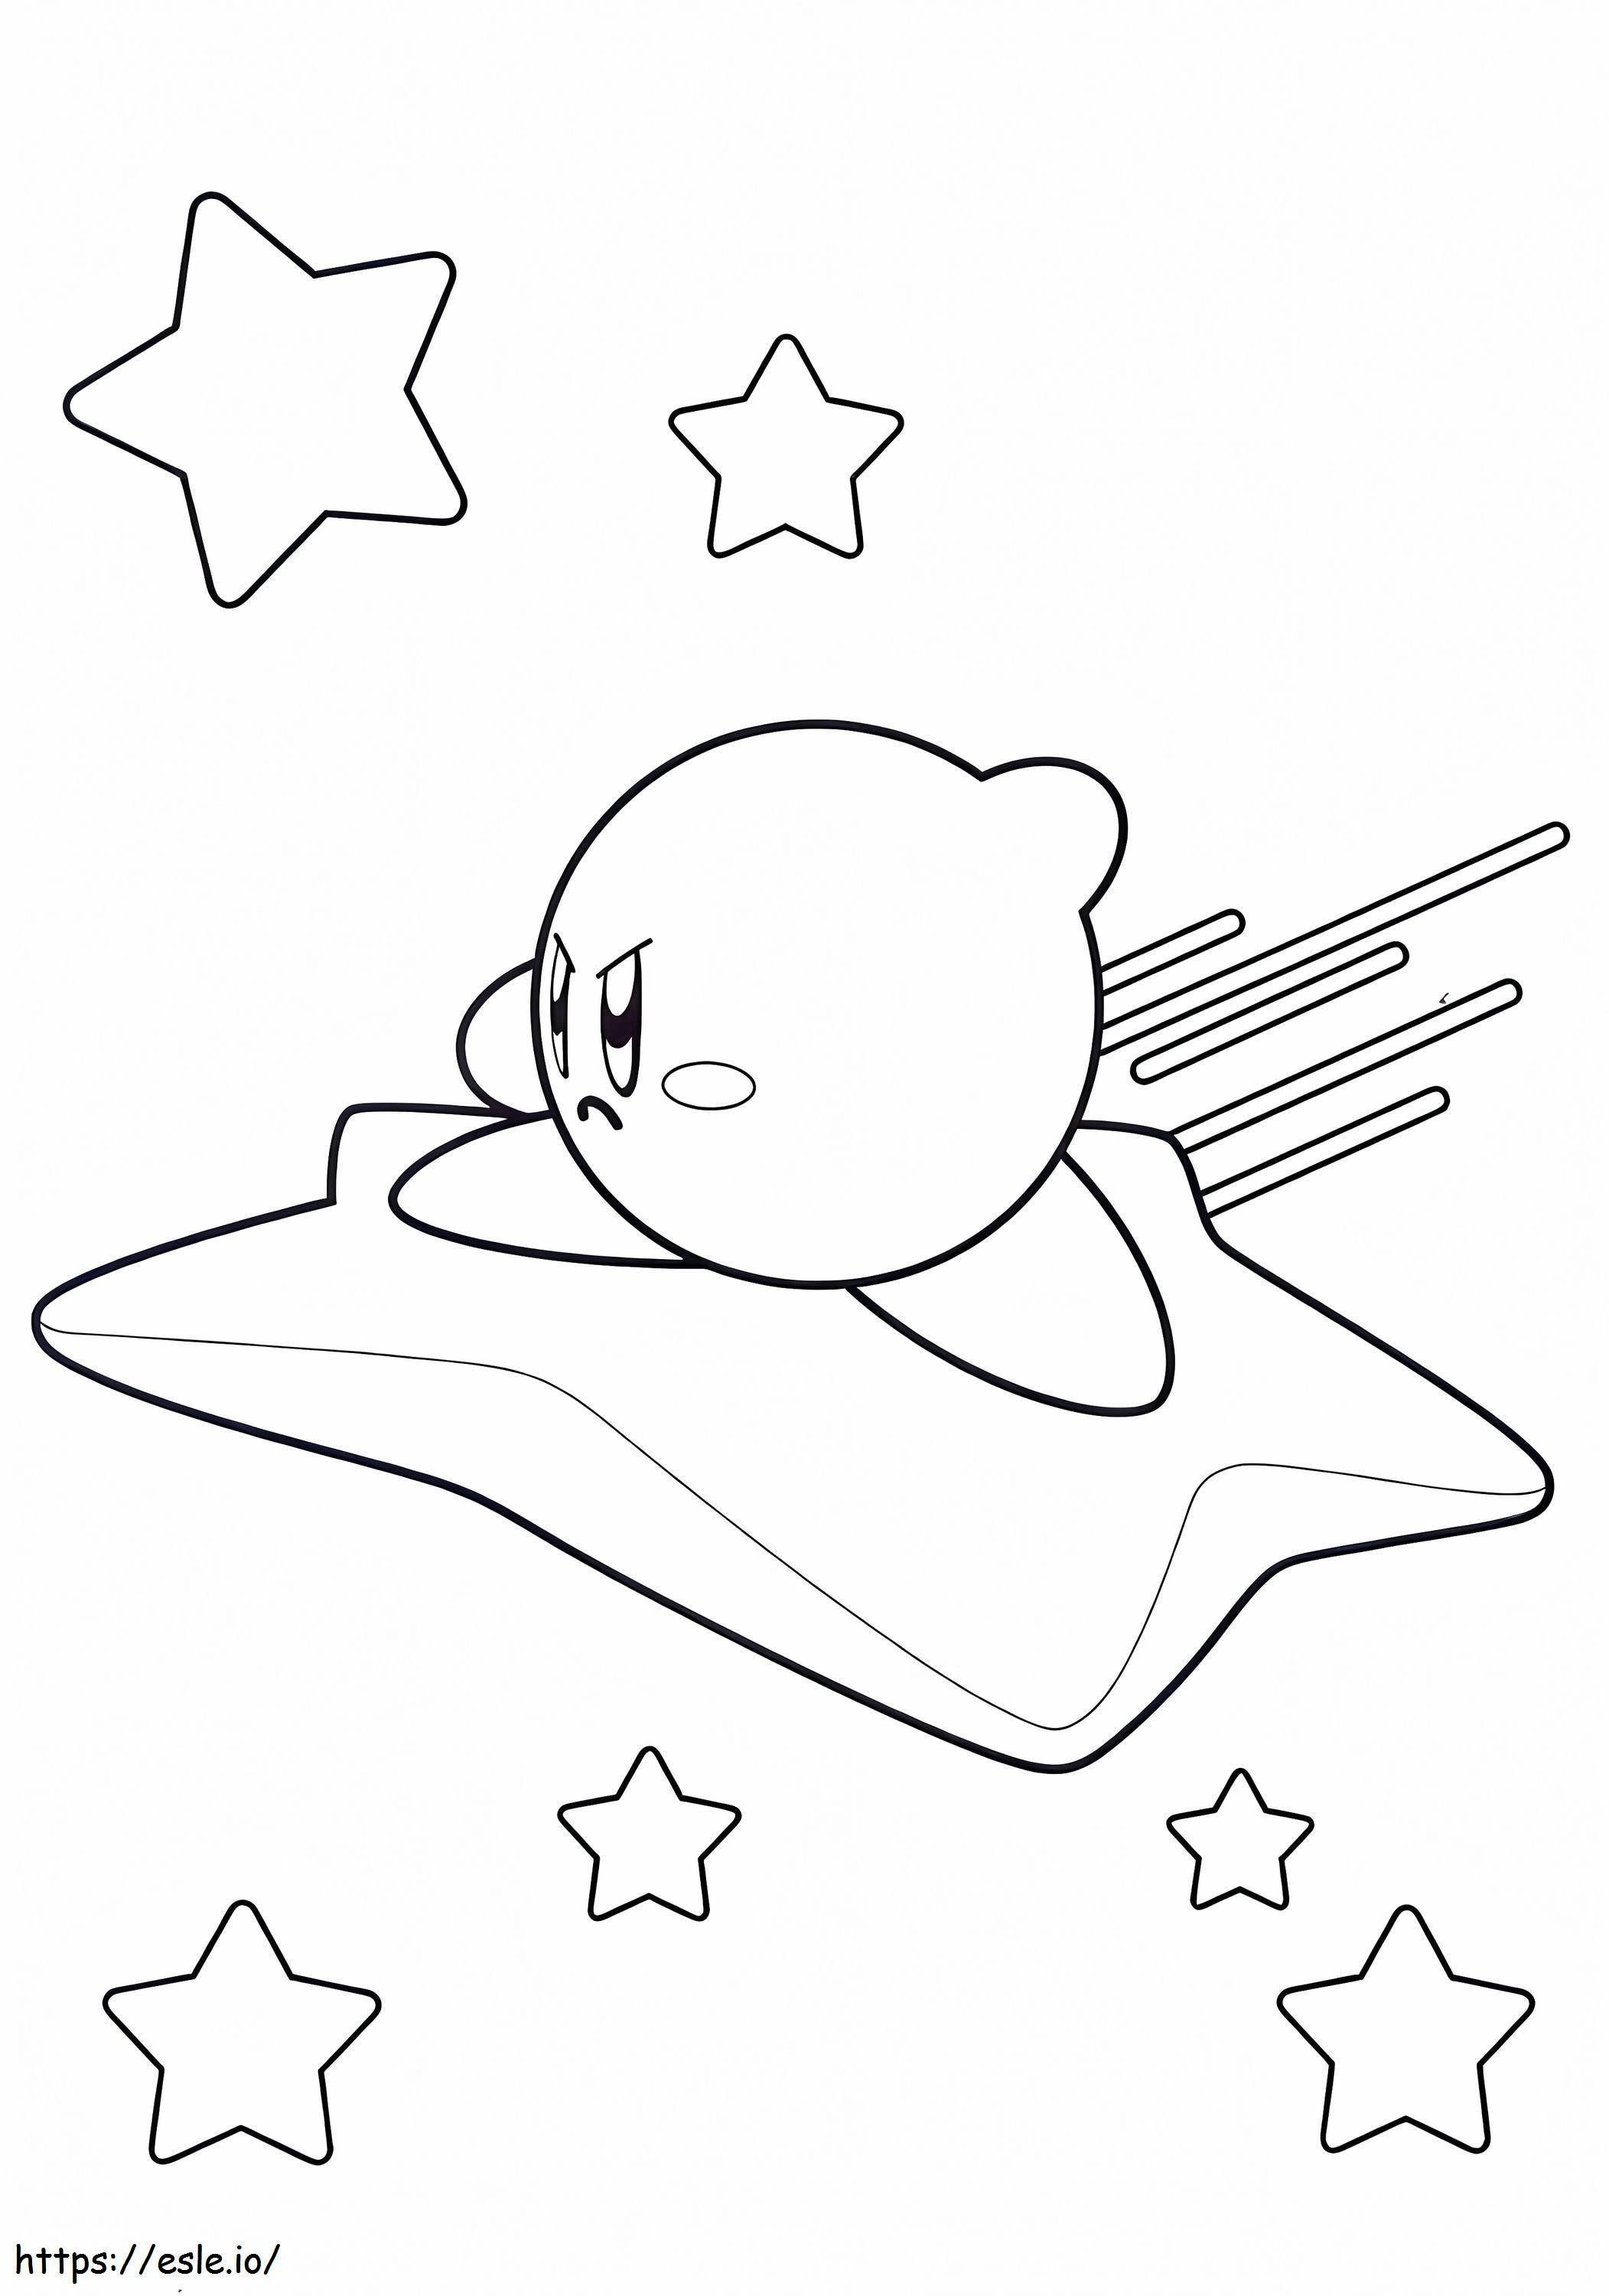 Kirby vola sulla stella da colorare